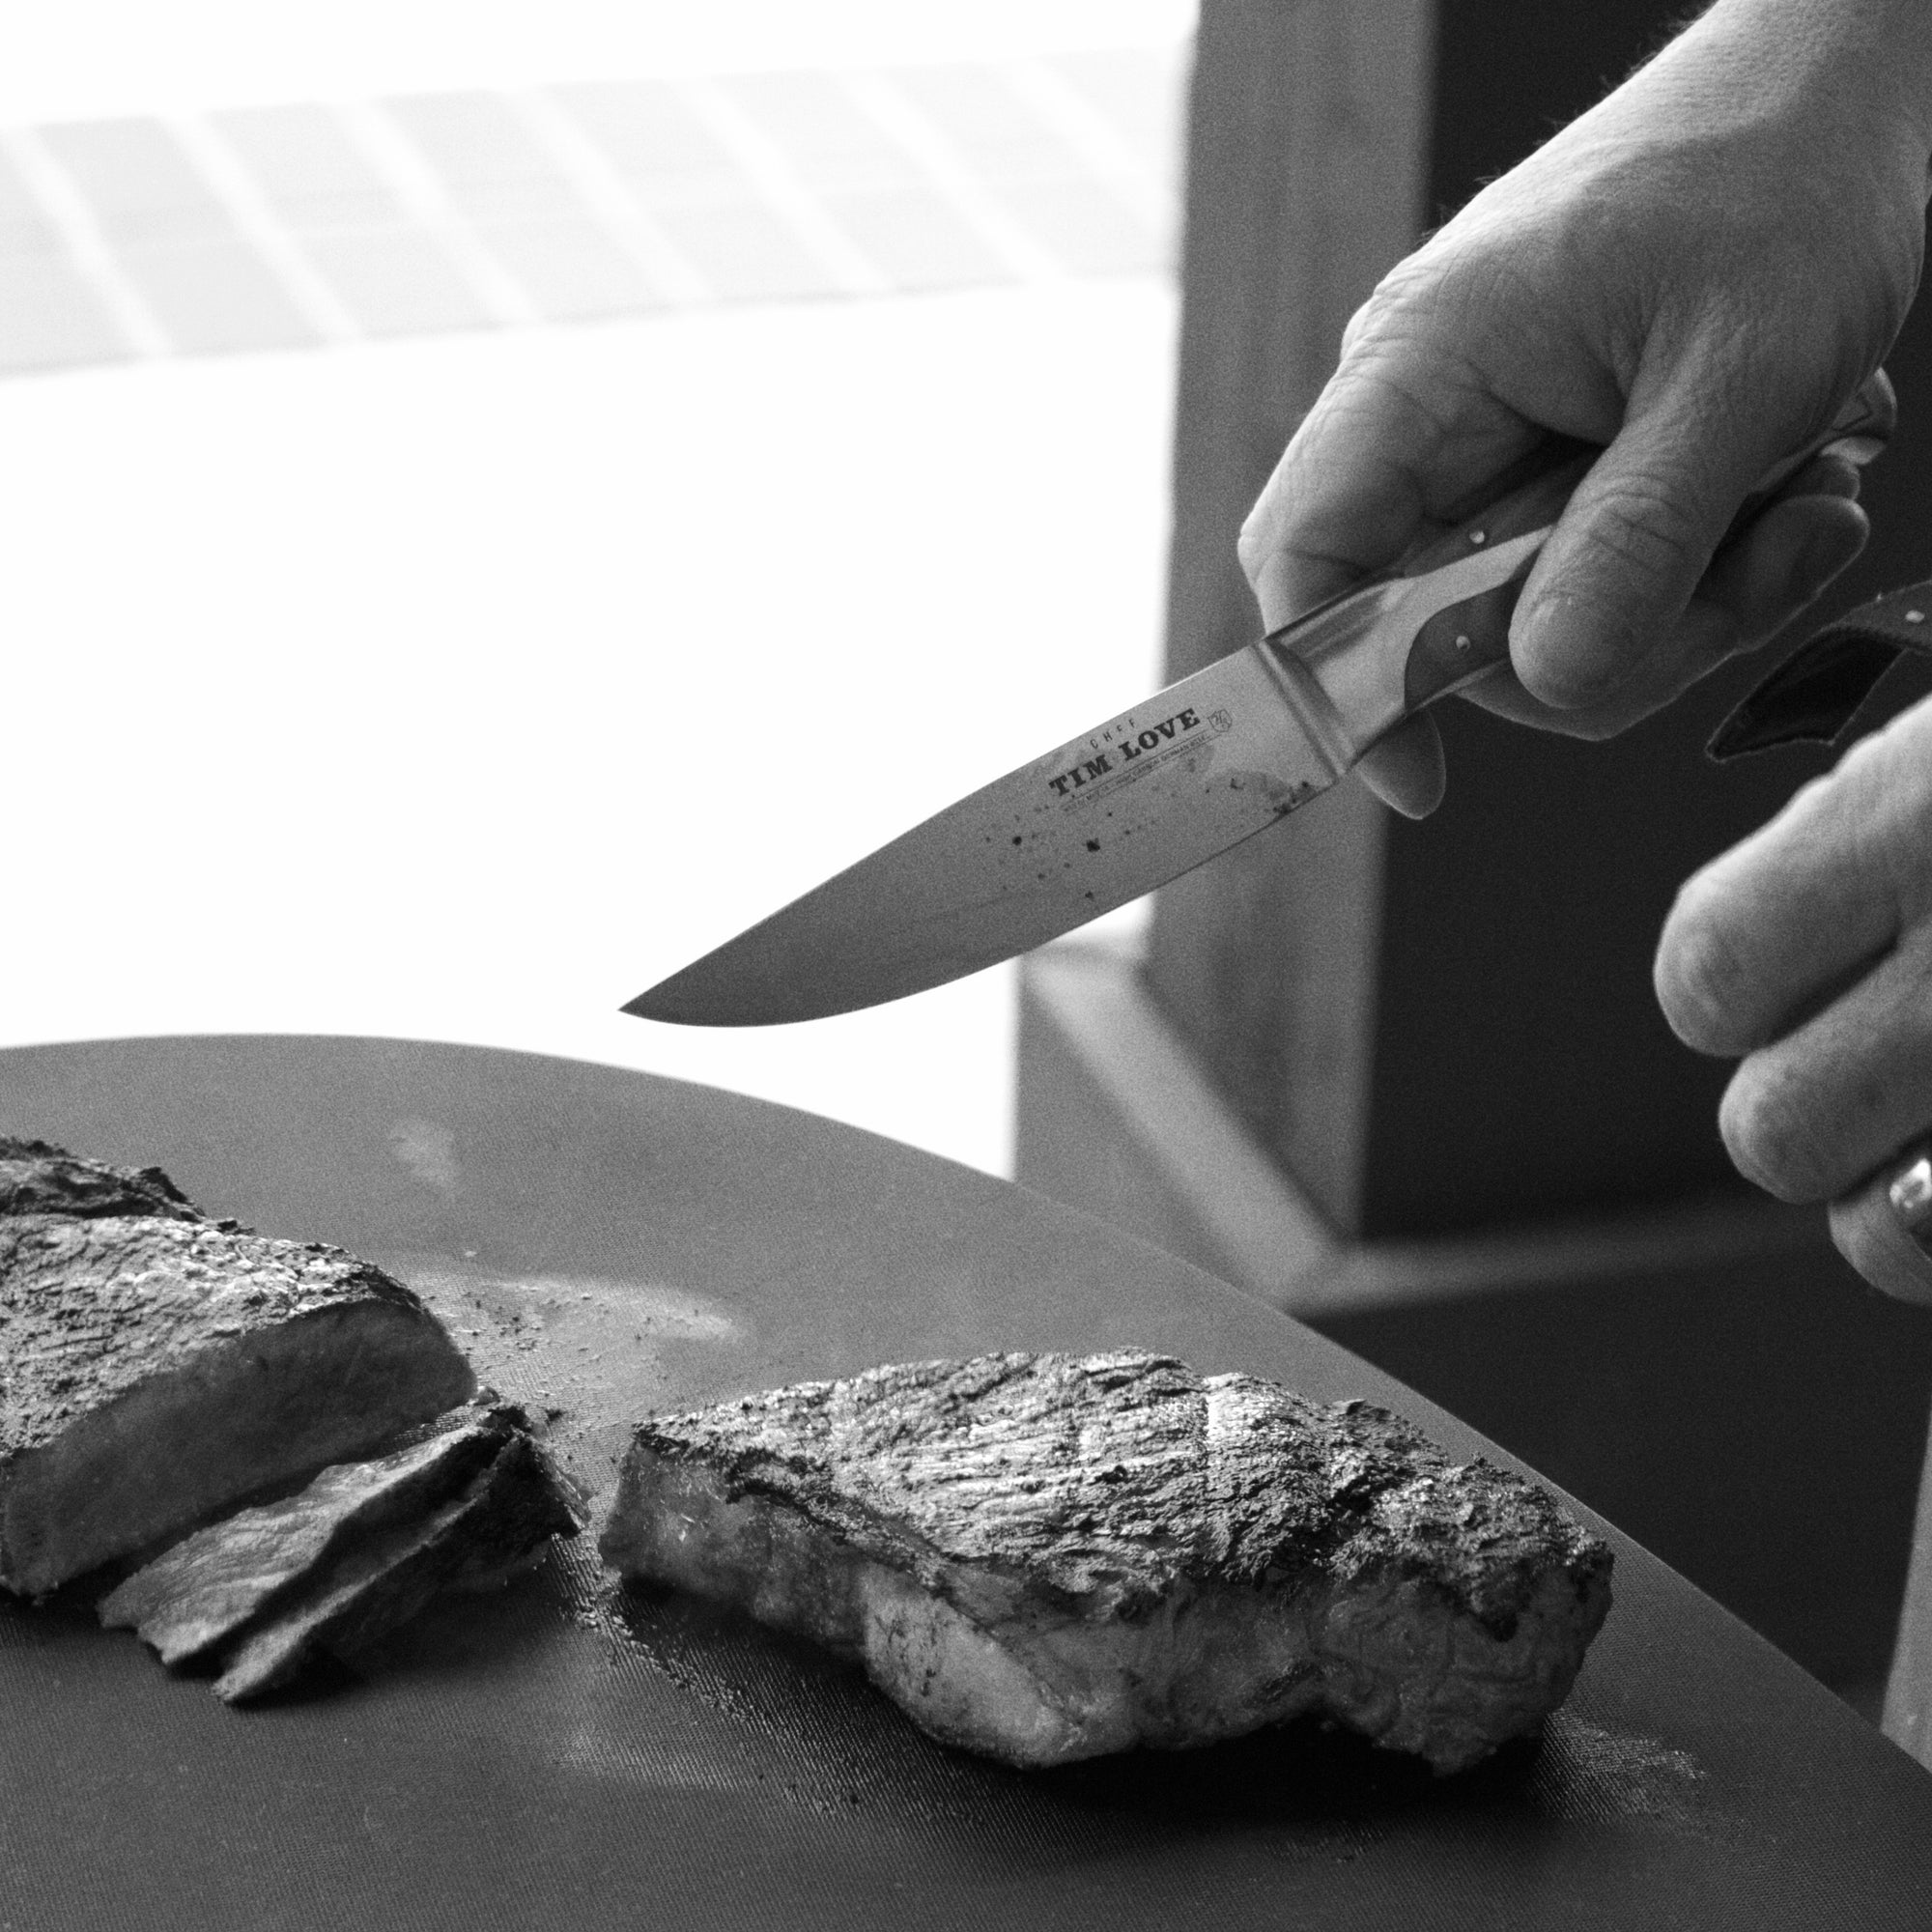 Steak Knives Premium Stainless Steel Steak Knives Set - Temu